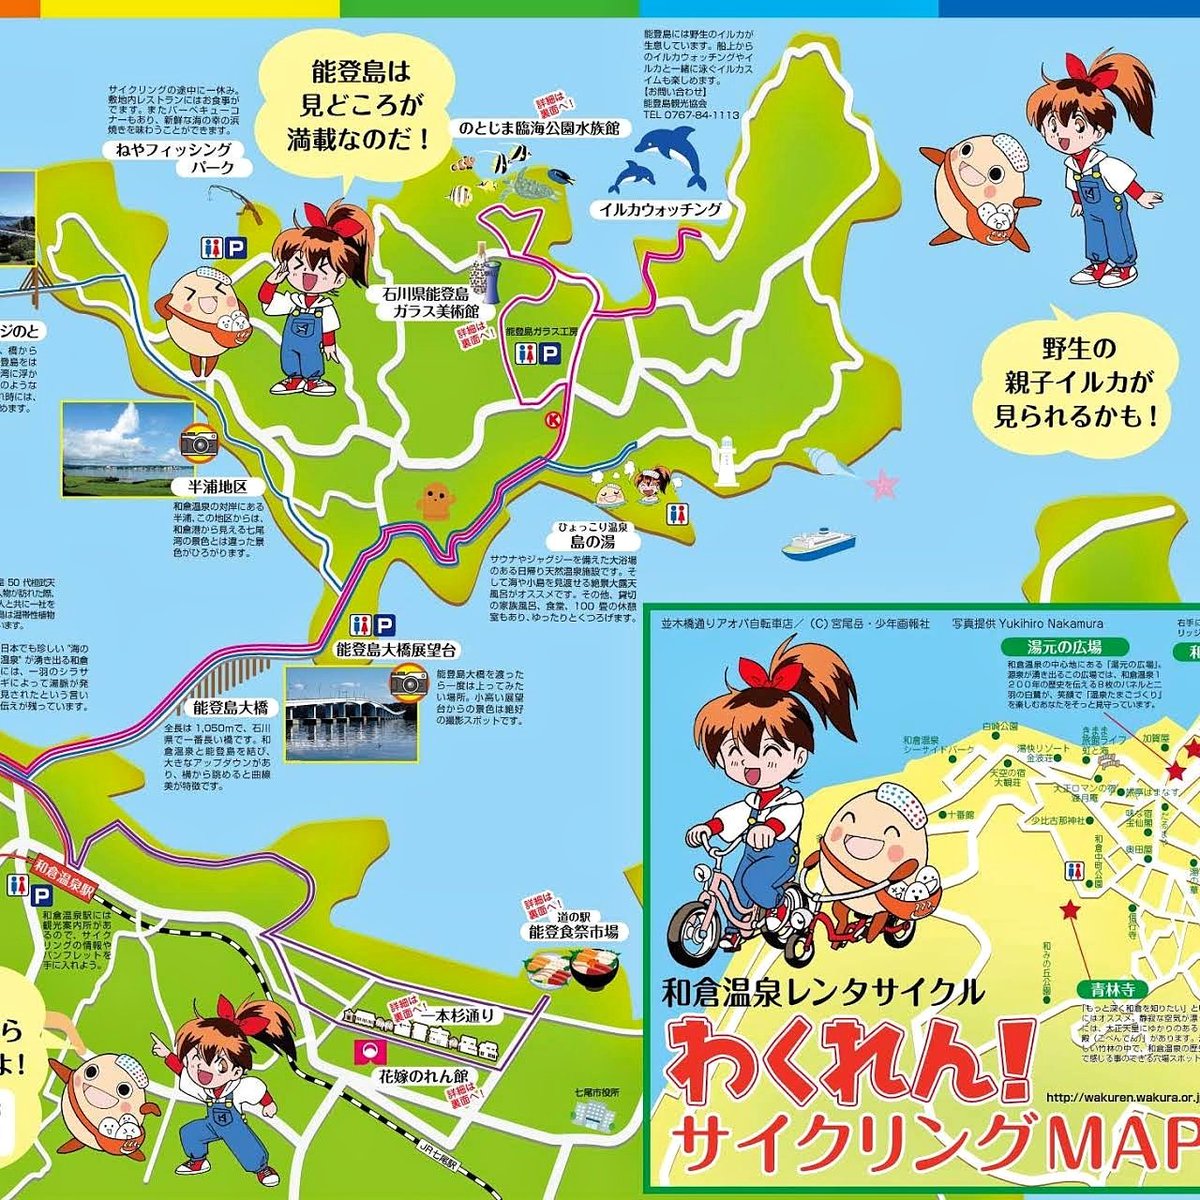 和倉温泉レンタサイクル活性化計画は、和倉温泉のアイドル「わくたまくん」とアオバちゃんのコラボもある。 二人が和倉温泉や、のと島を案内するマップも作りました。 やはりこういうのは、現地をちゃんと自転車で走らないとね。